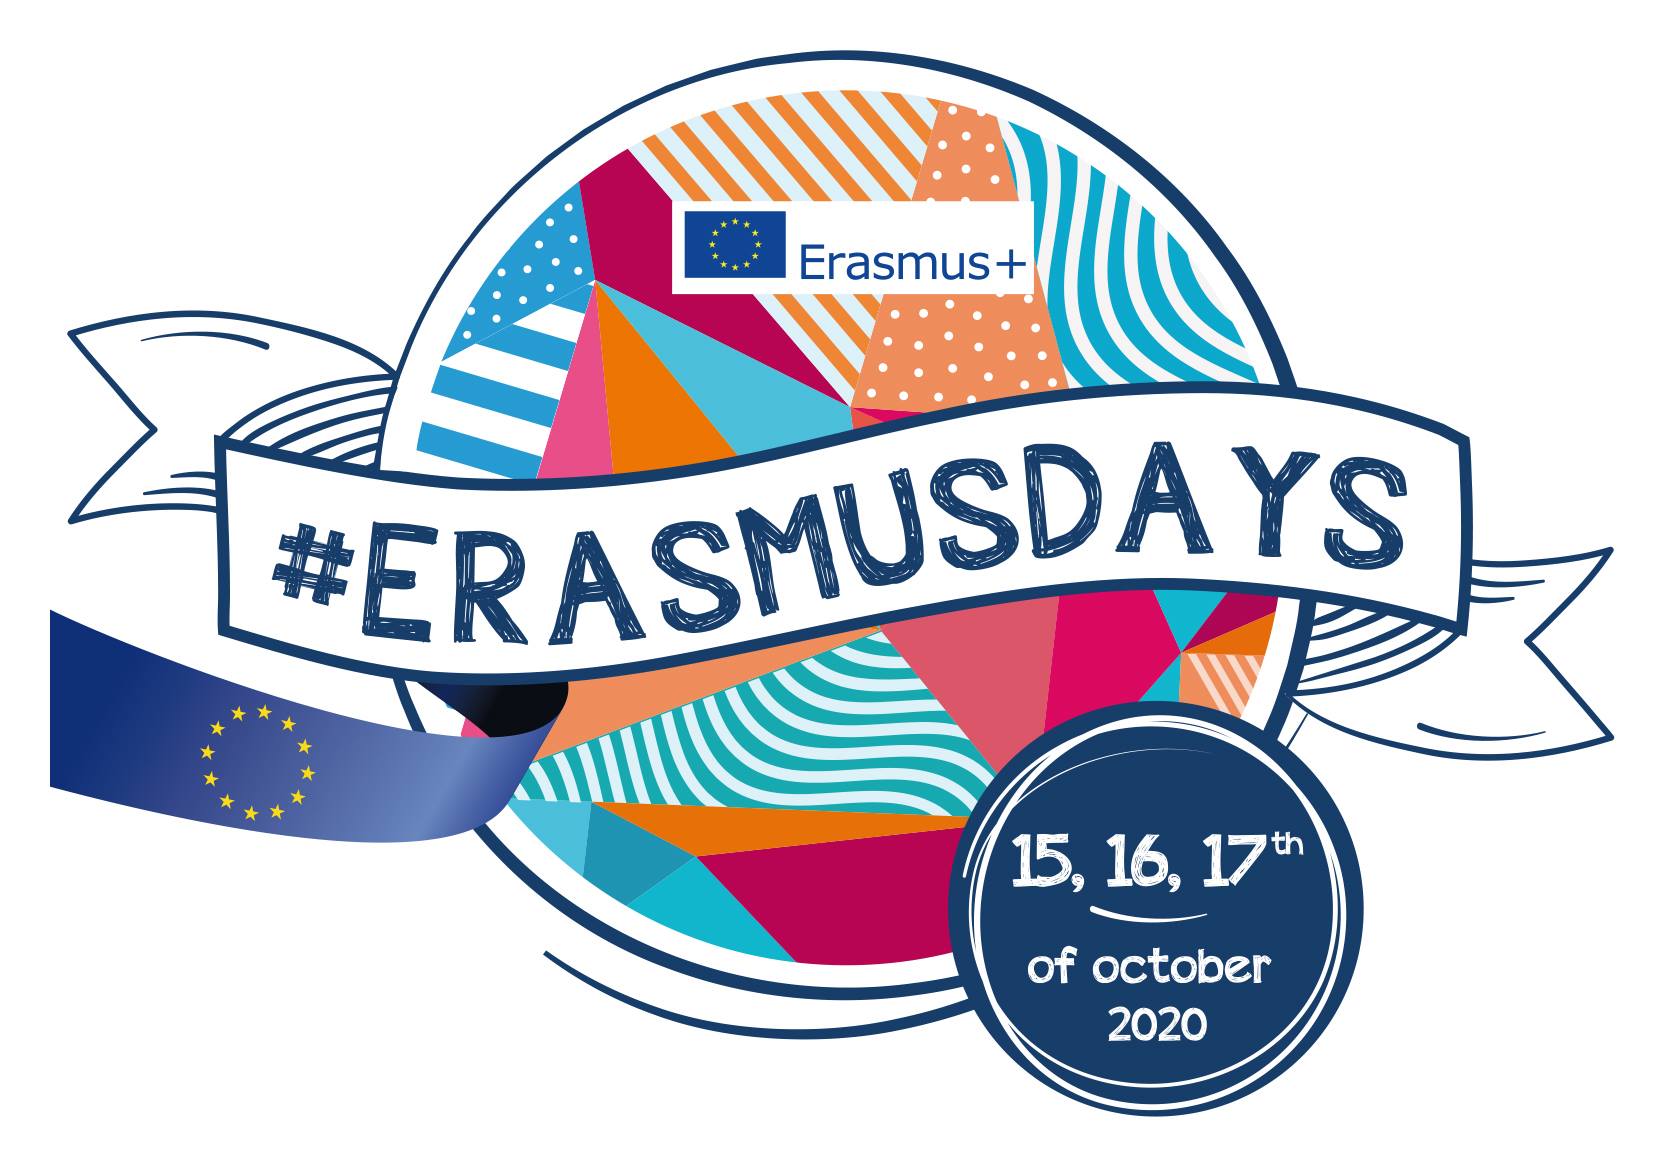 Eramus days - international